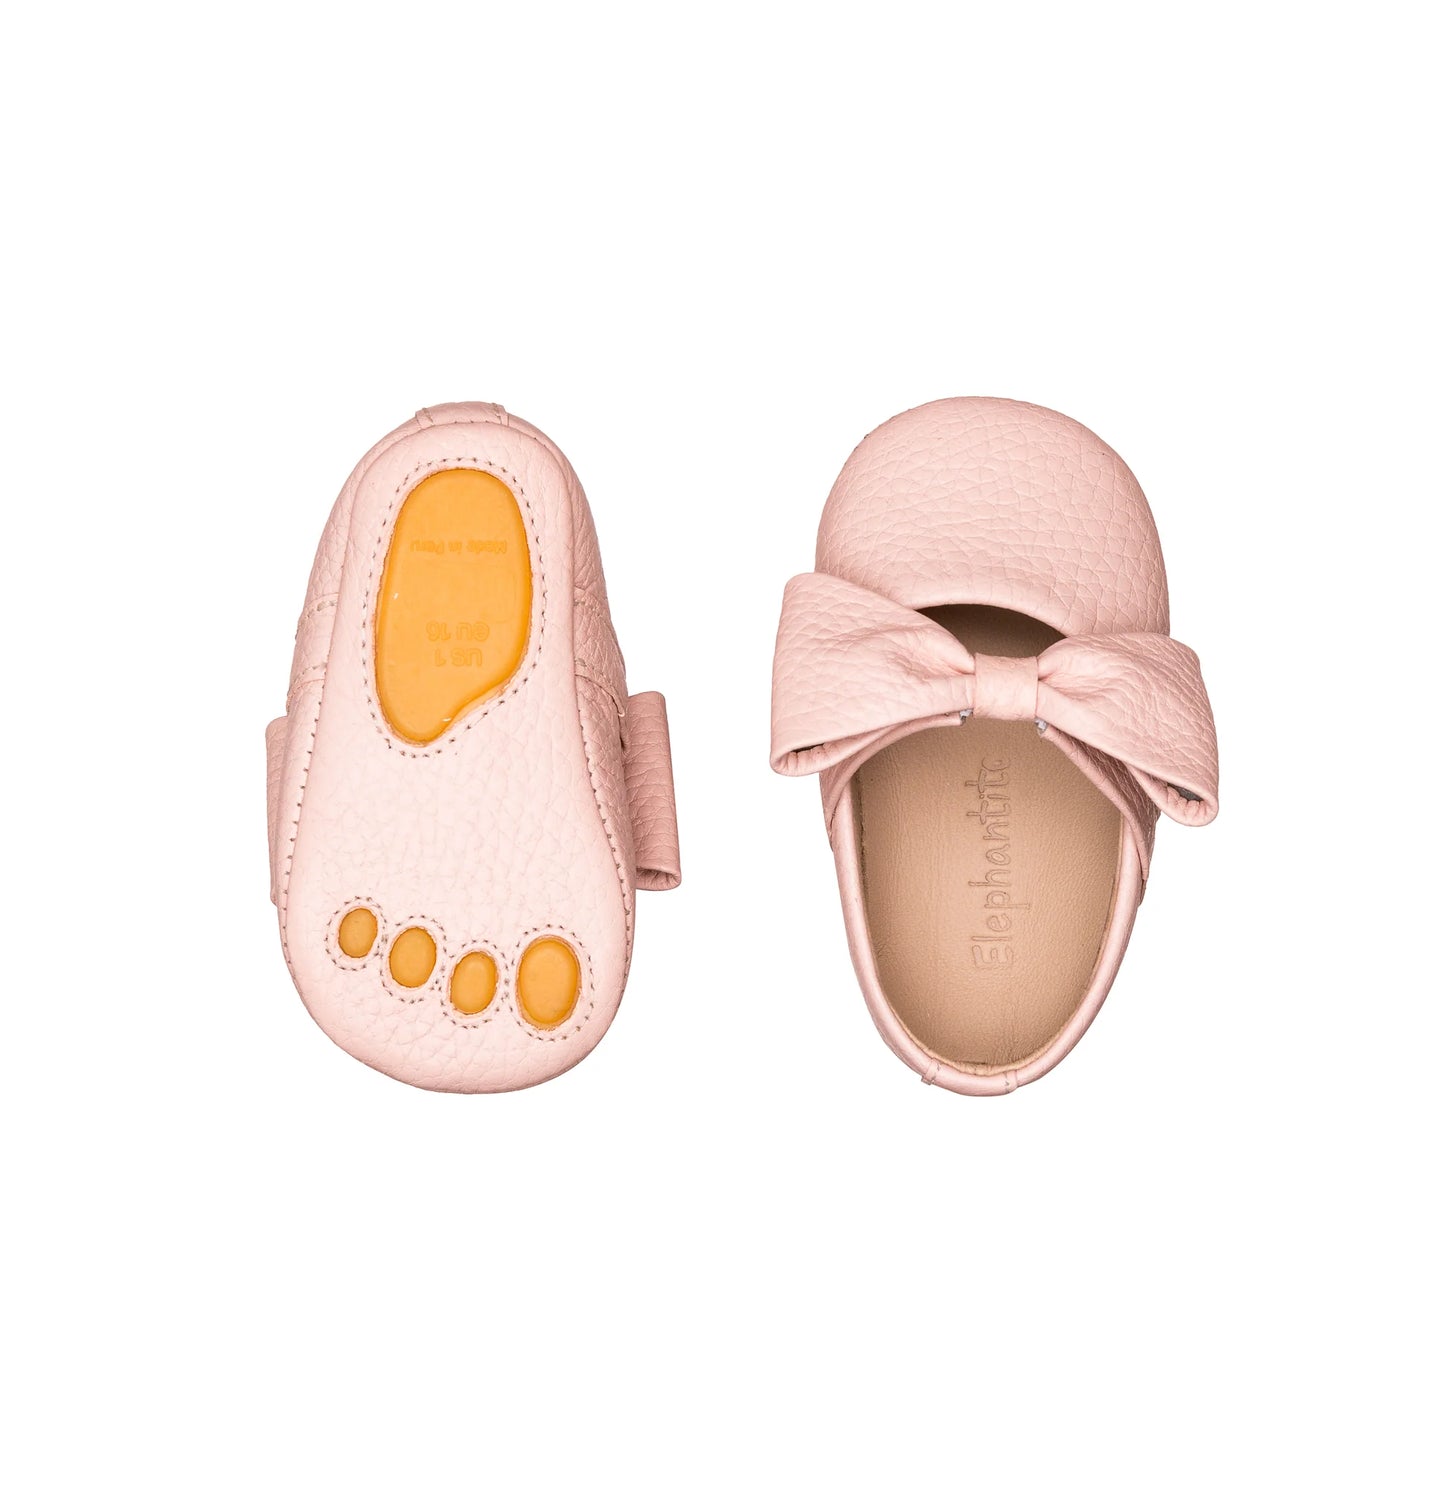 Baby Ballerina Shoes w/ Bow - Elephantito